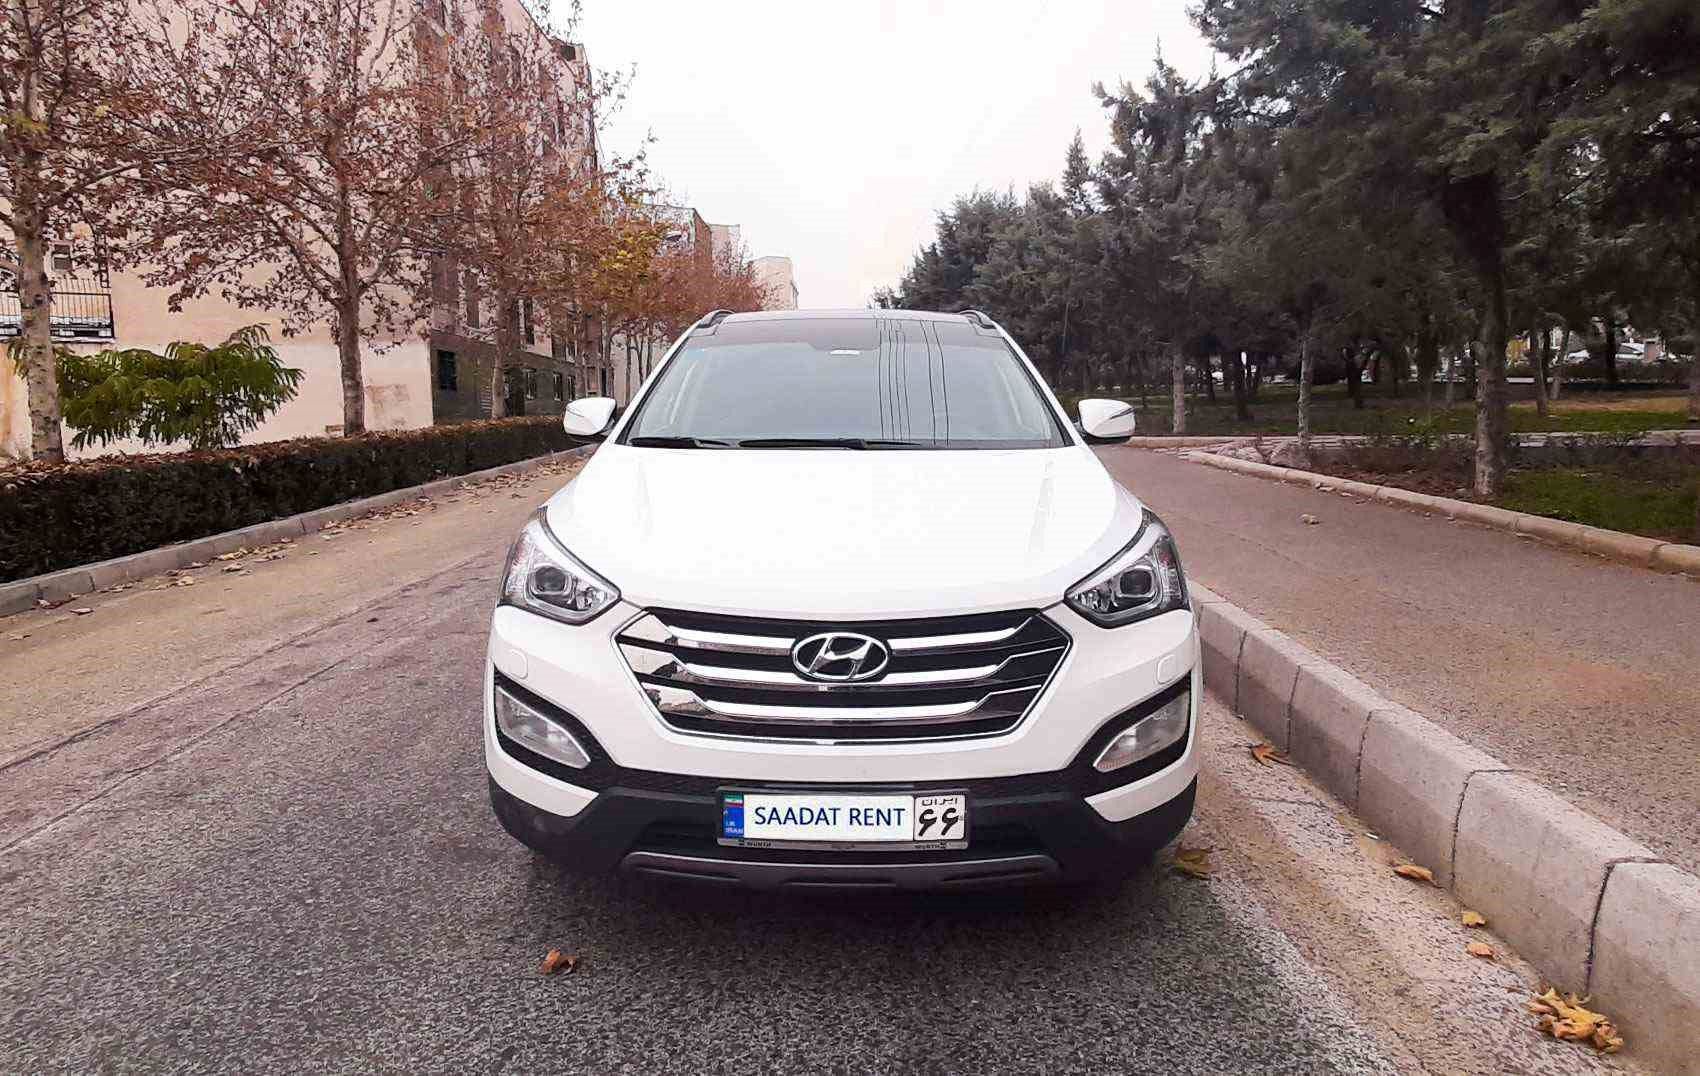 اجاره سانتافه نیو و لندکروز دو خودرو محبوب در تهران – شرایط رنت این خودرو چگونه است؟